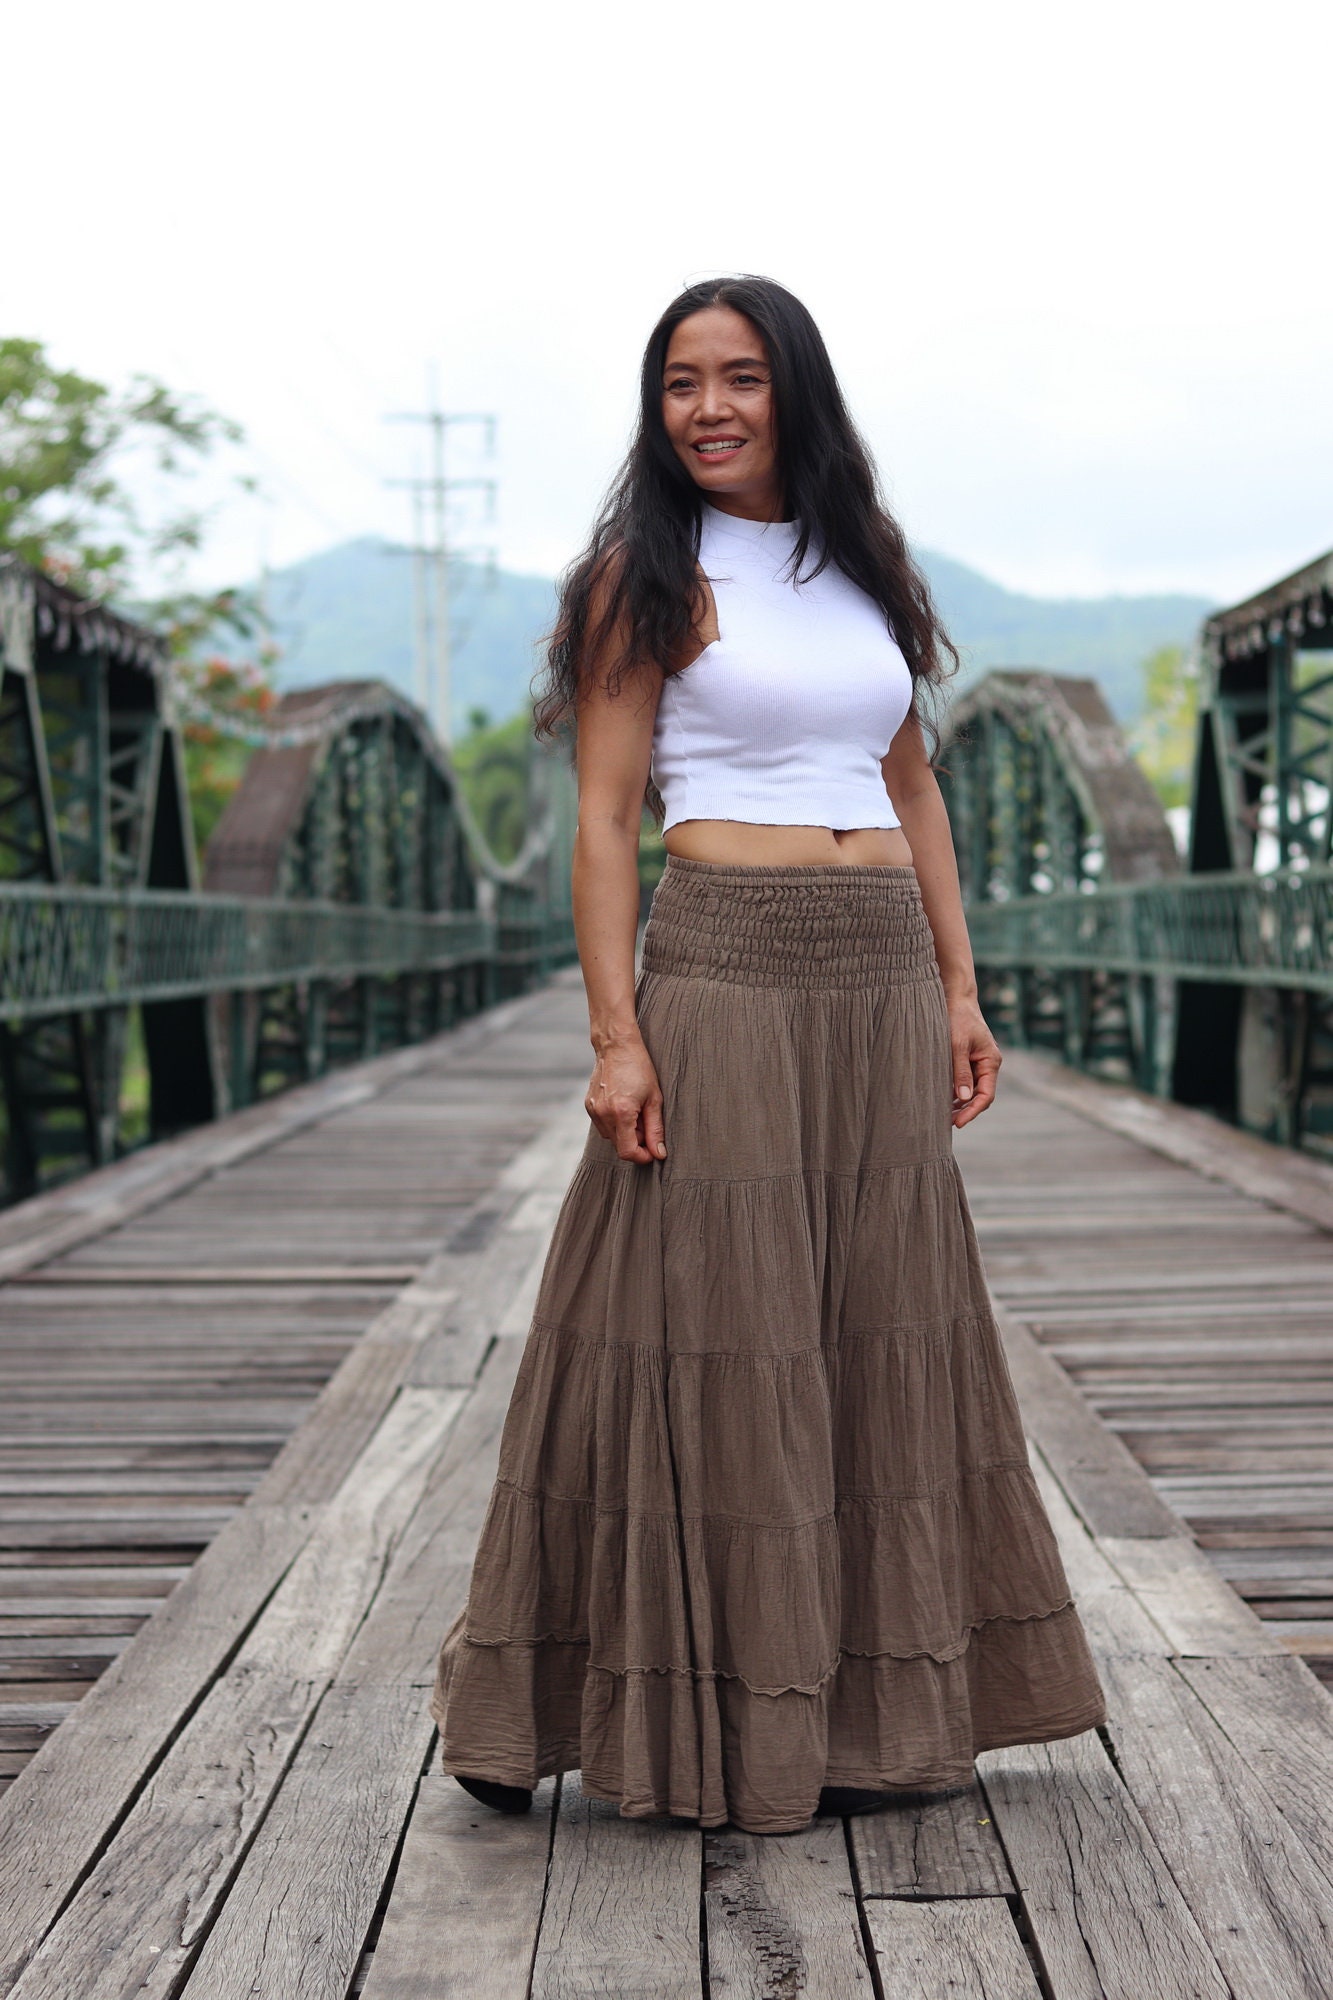 Gauze Tiered Skirt / Maxi Skirt / Long Boho Skirt / Boho Skirt / Full  Length Skirt / Cotton Skirt / Long Skirt / Light Brown Skirt 